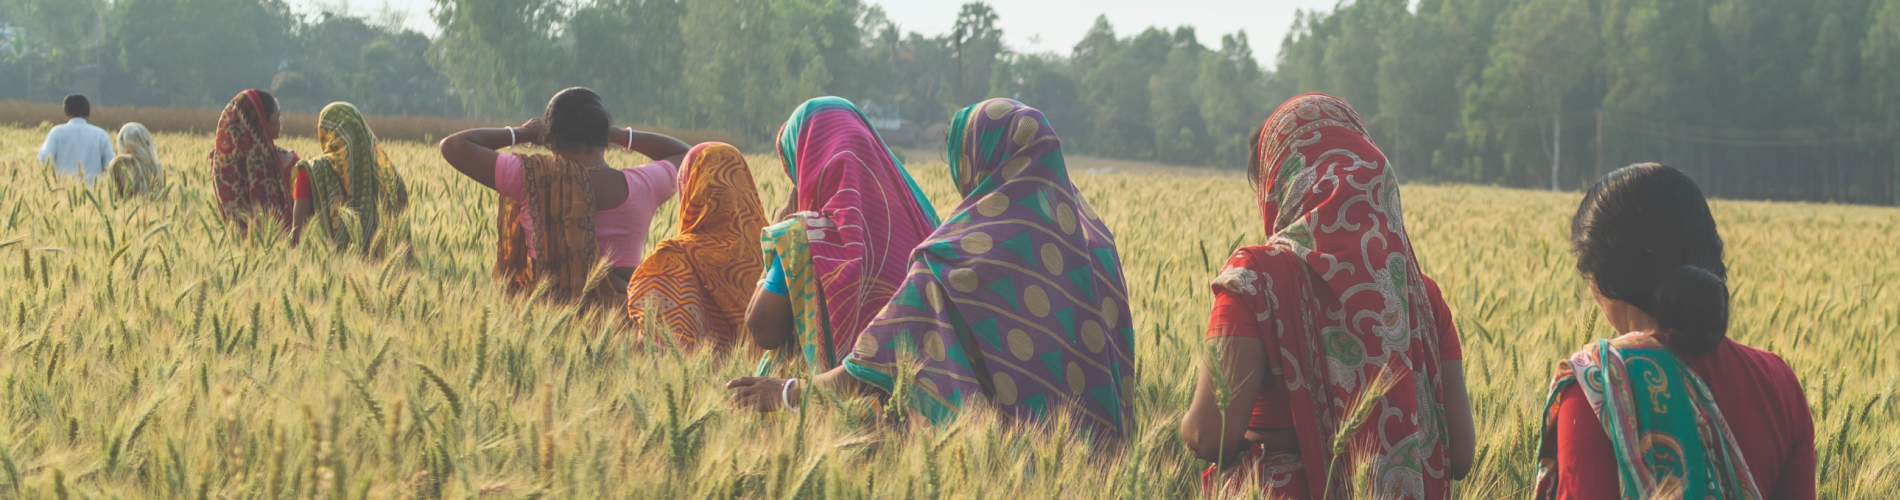 Women walking through a crop field